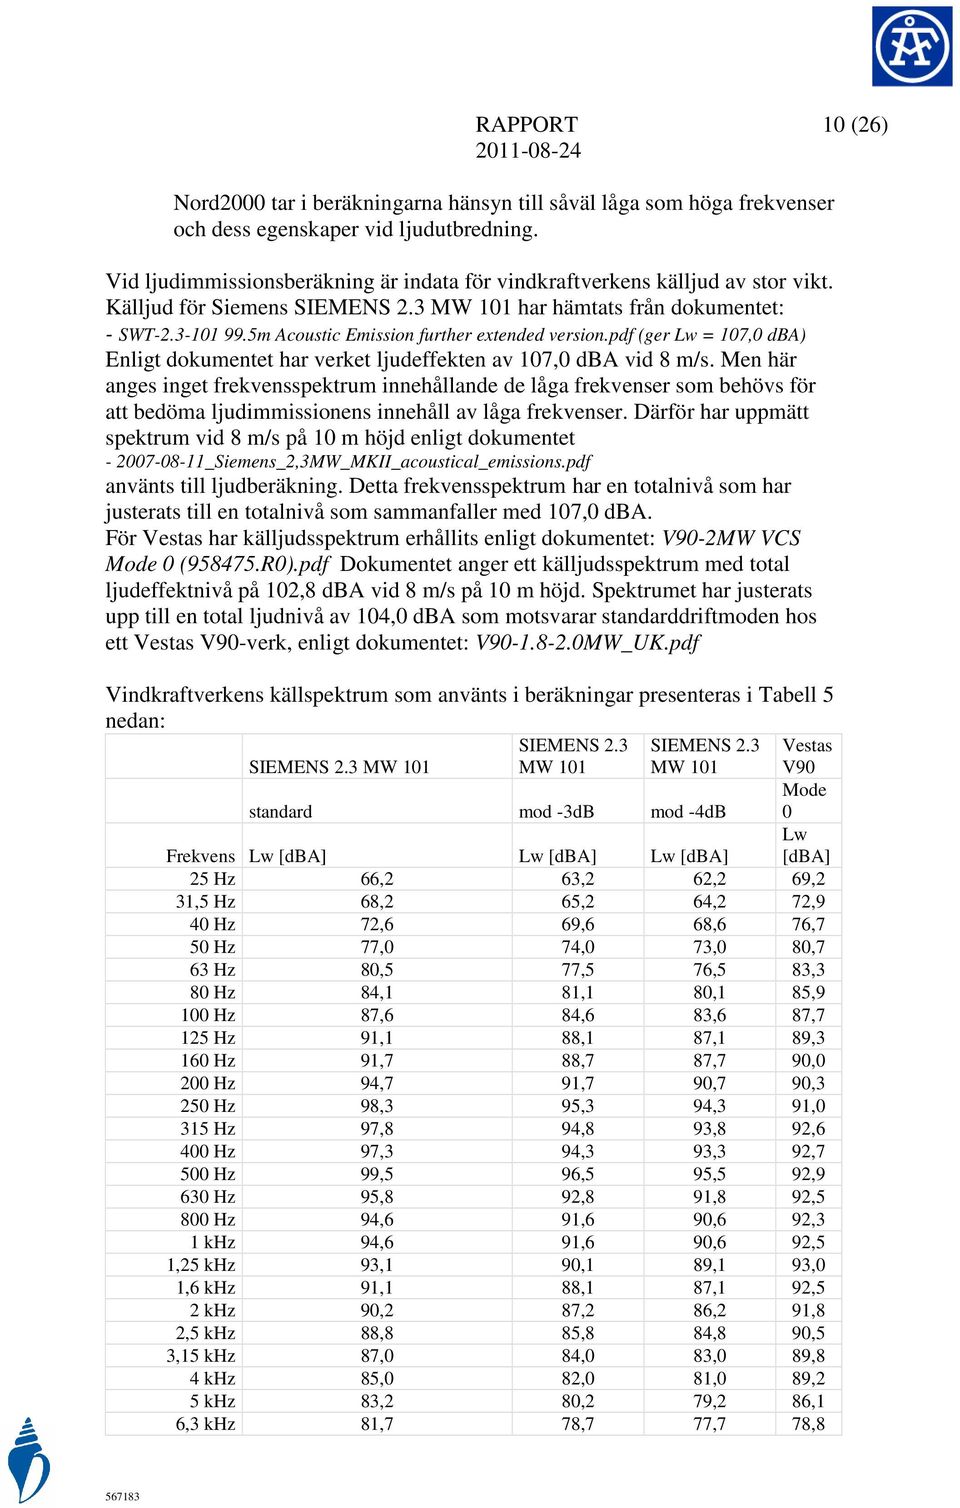 5m Acoustic Emission further extended version.pdf (ger Lw = 107,0 dba) Enligt dokumentet har verket ljudeffekten av 107,0 dba vid 8 m/s.